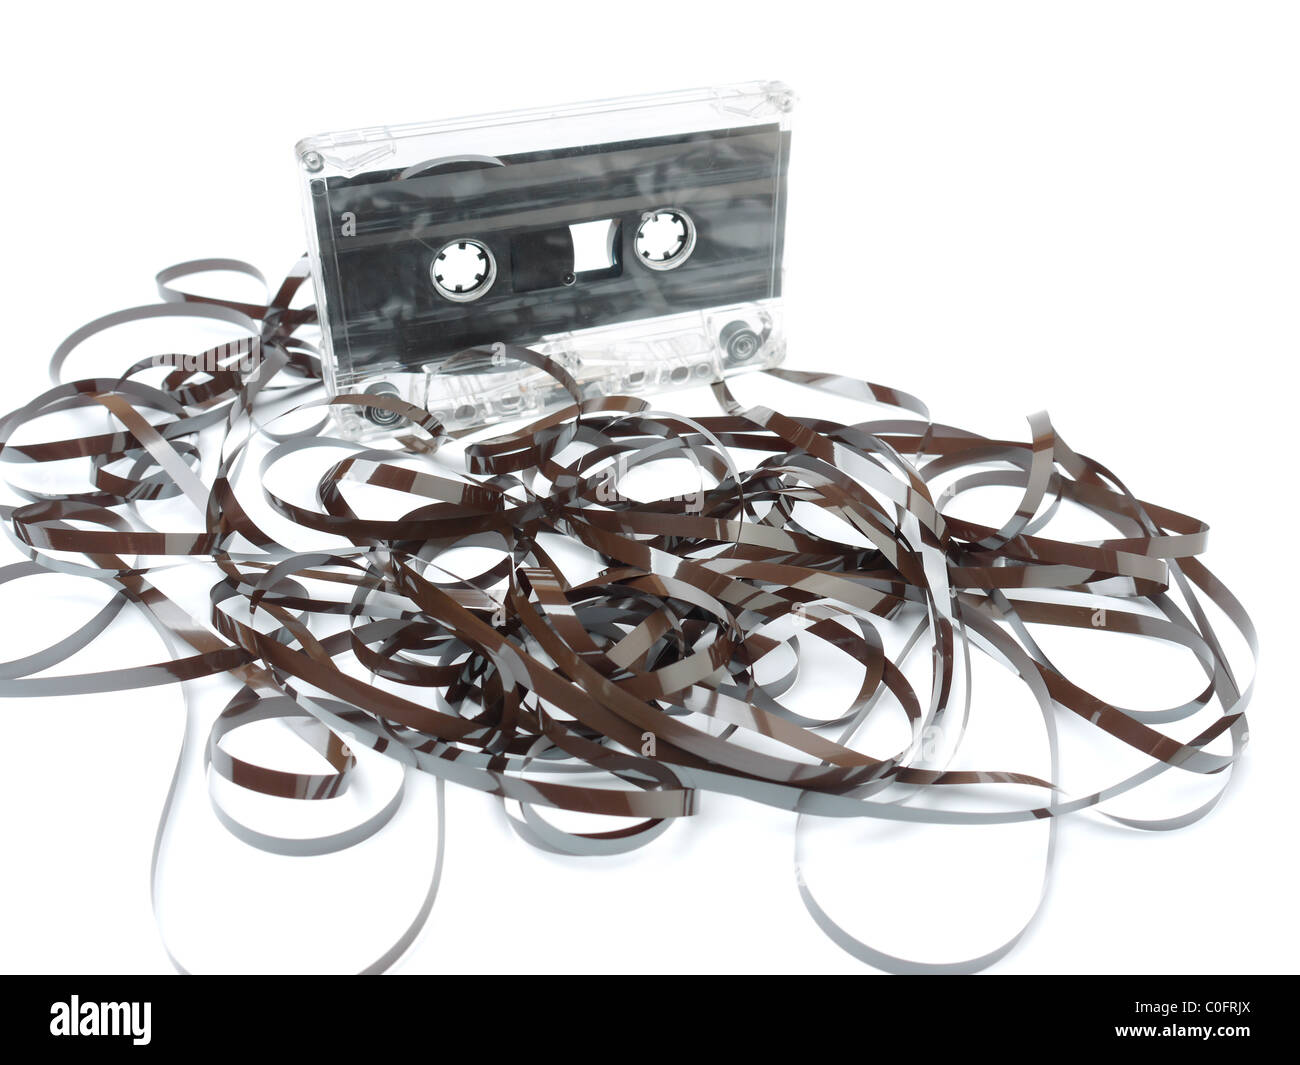 Vieille cassette audio est retirée et emmêlée sur fond blanc Banque D'Images